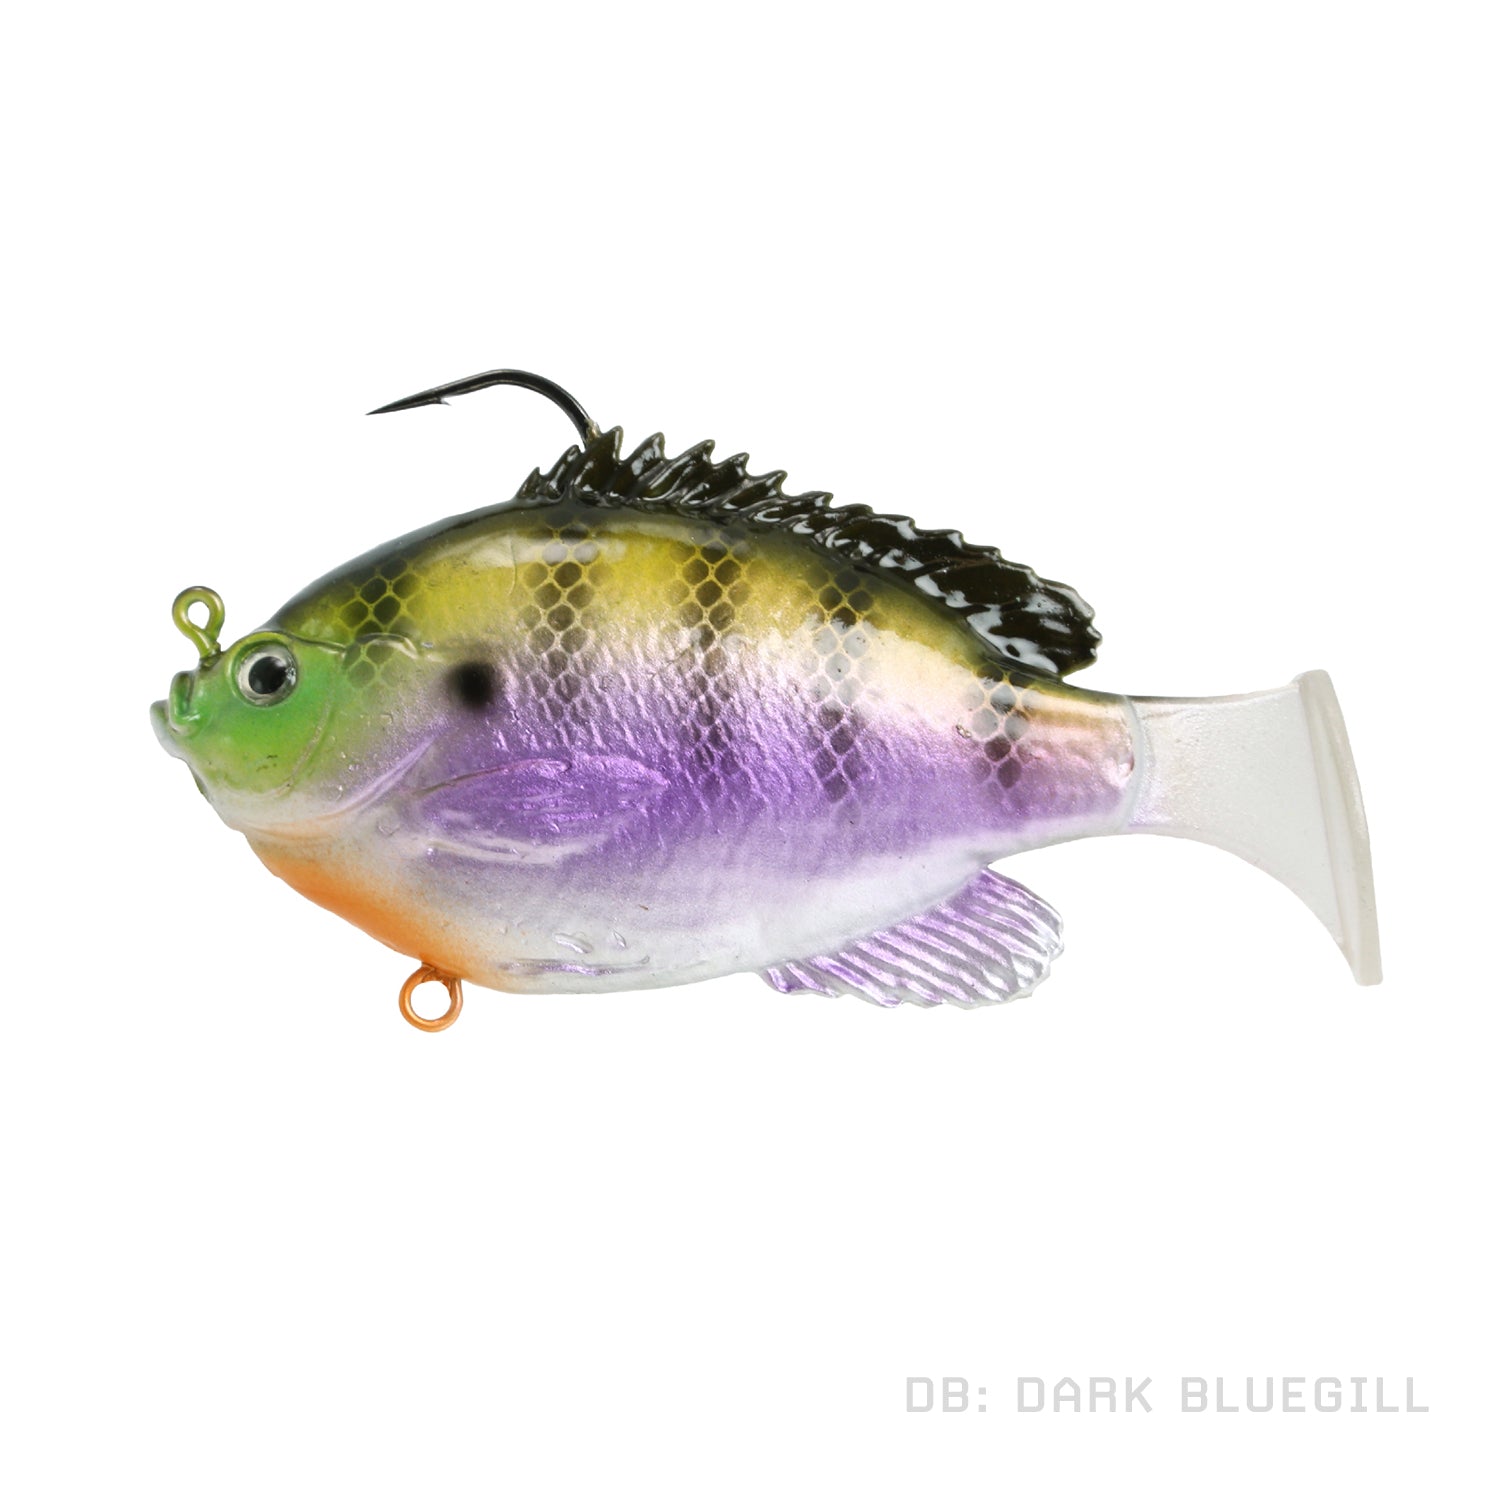 https://fishandtackle.com/cdn/shop/products/fishlab_bio_gill_rigged_swim_bait_dark_bluegill.jpg?v=1642899930&width=1500